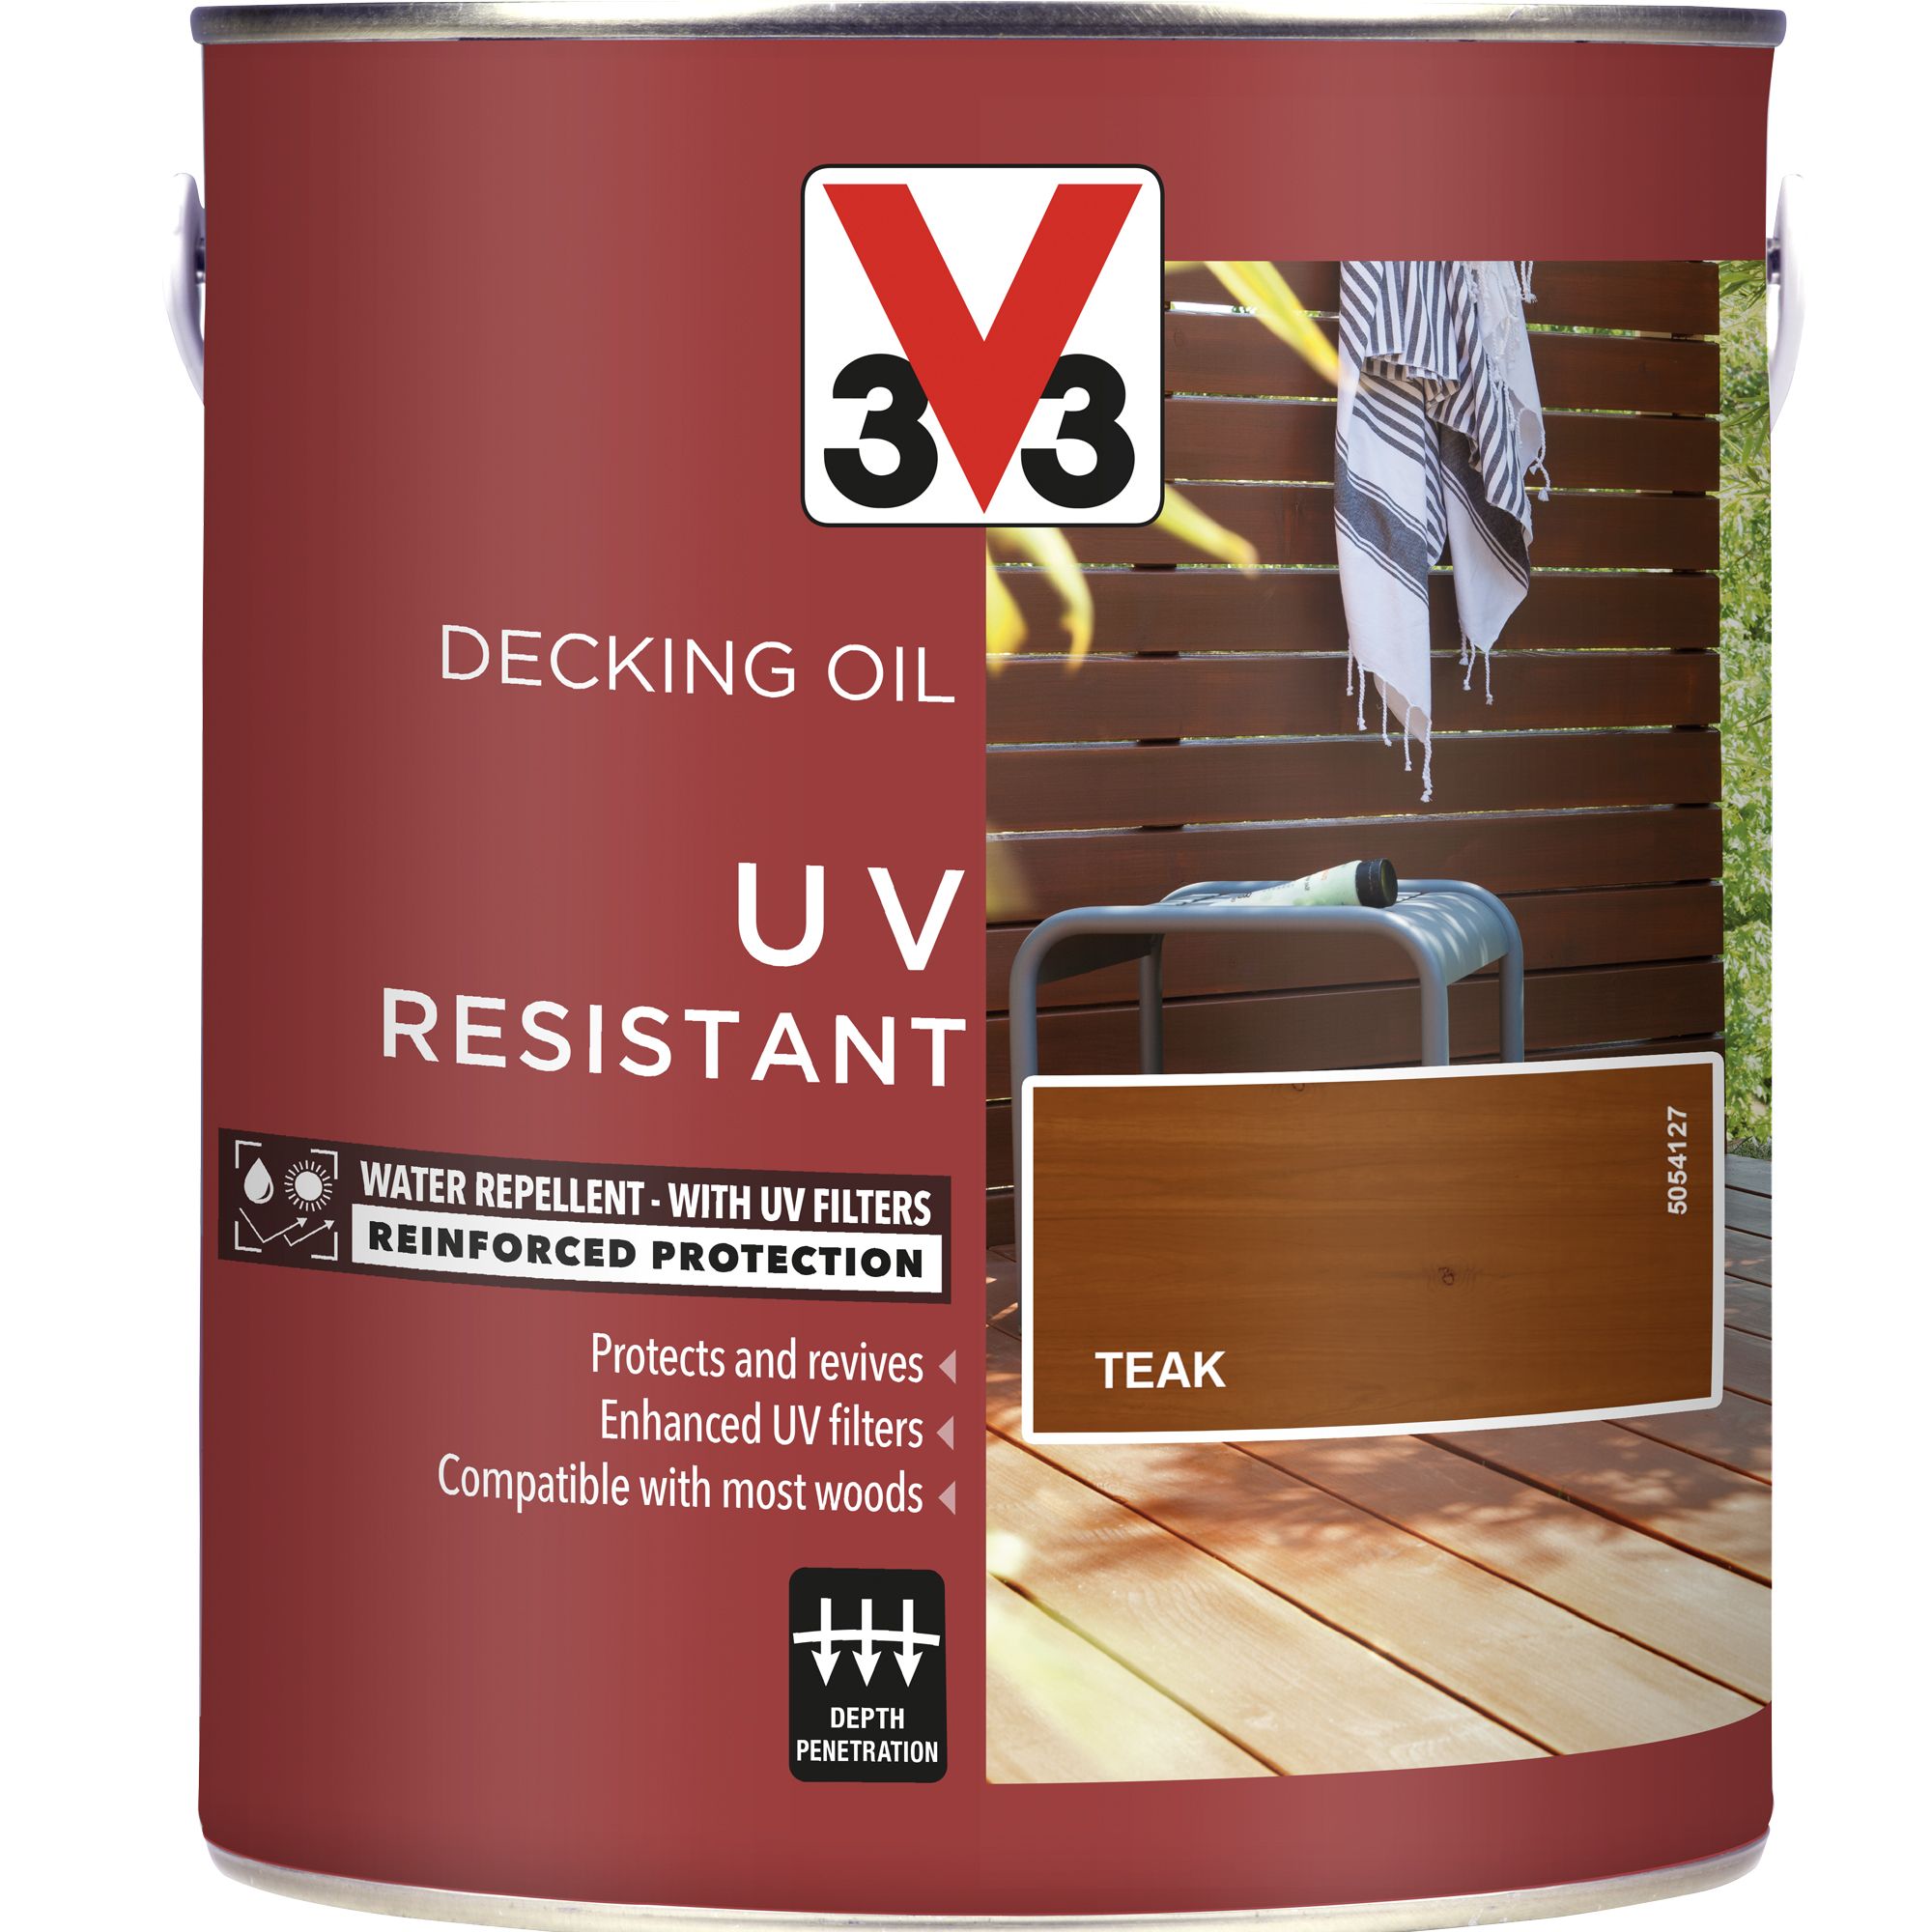 V33 Teak UV resistant Decking Wood oil, 2.5L